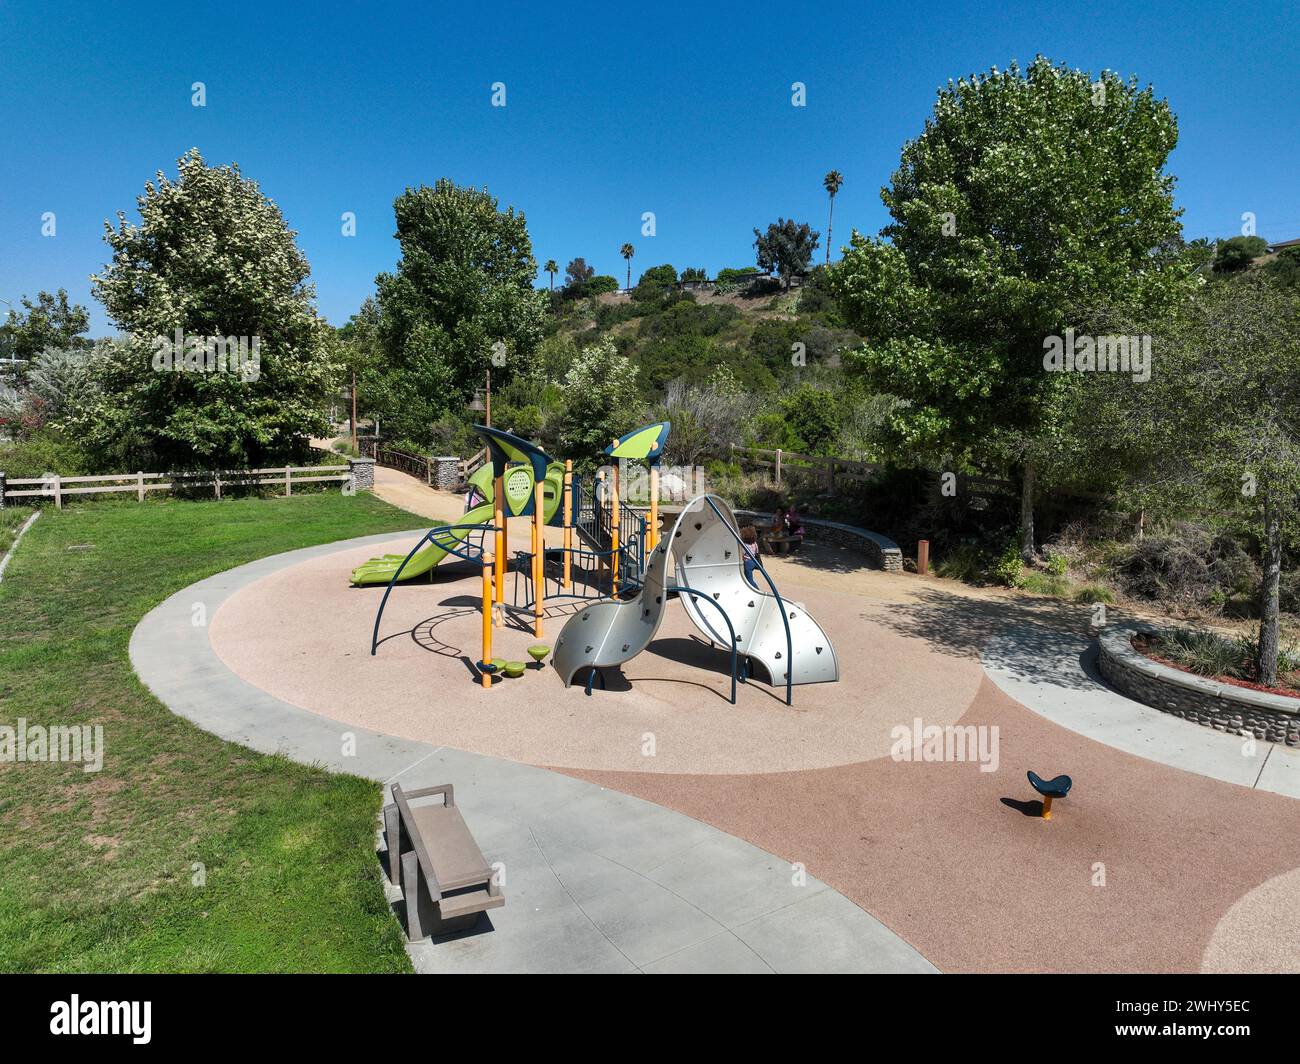 Bunte Kinderspielplatz Aktivitäten in öffentlichen Park umgeben von grünen Bäumen Stockfoto